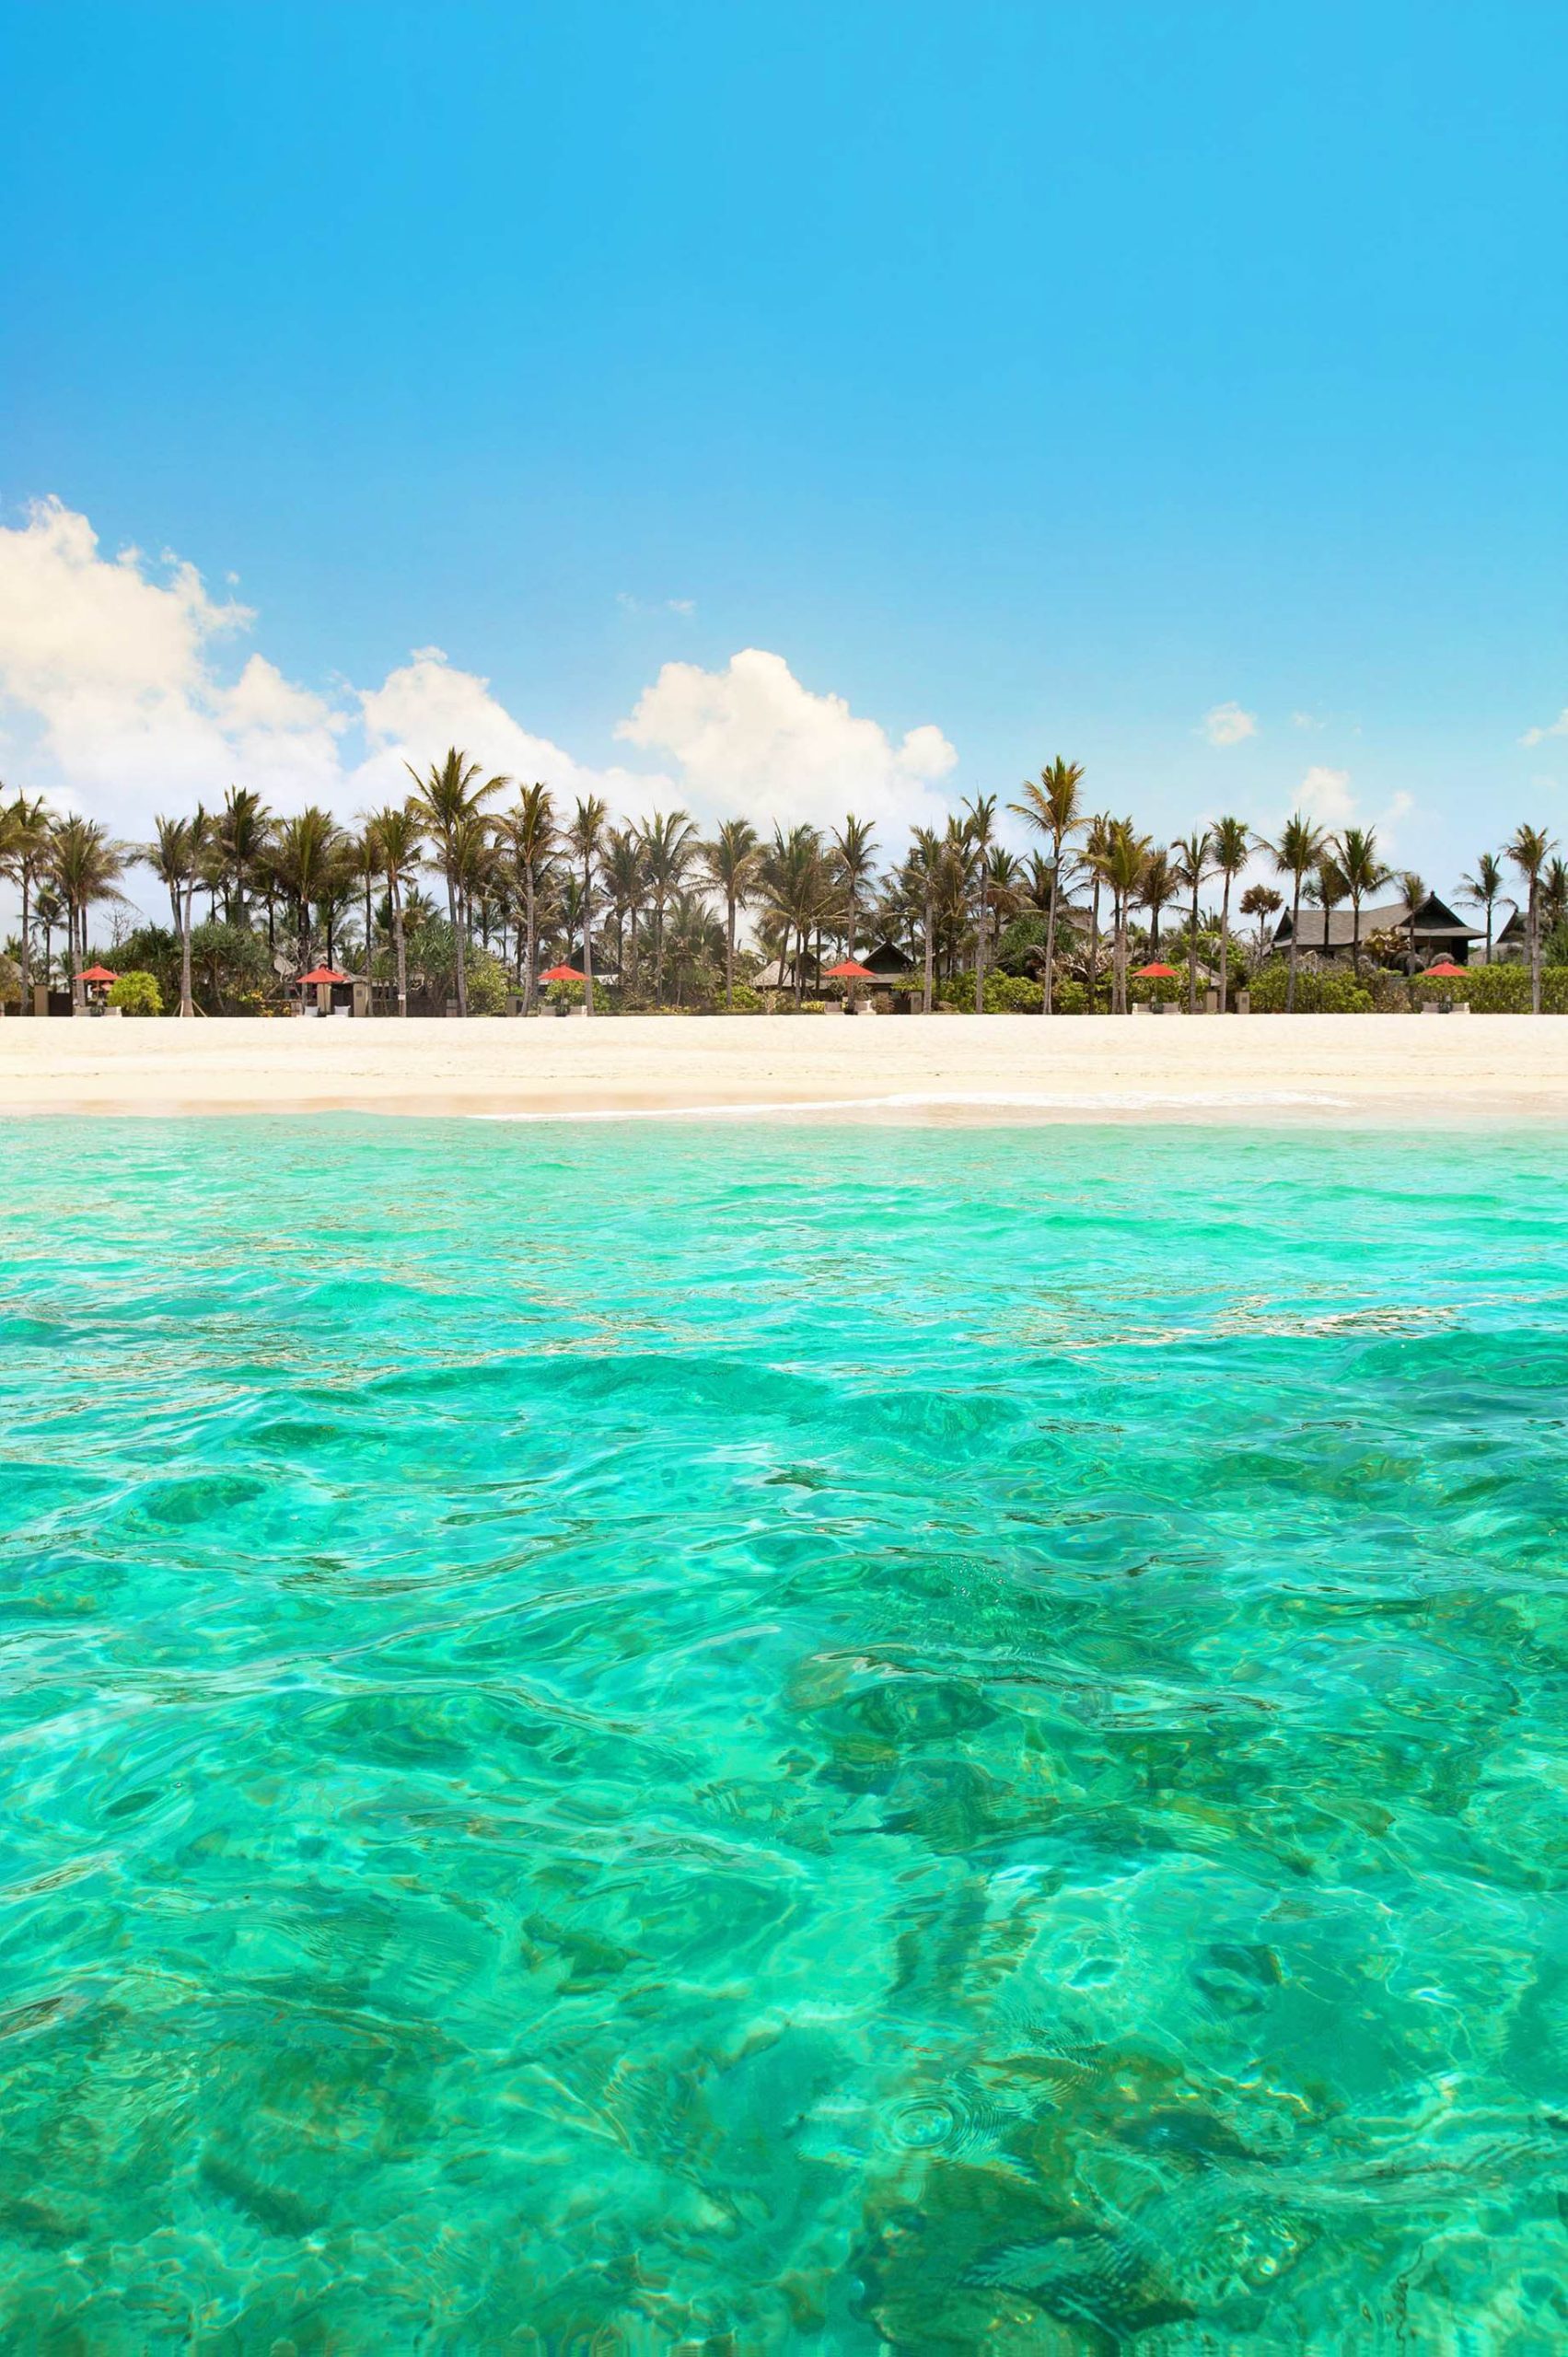 The St. Regis Bali Resort – Bali, Indonesia – Resort Beach Ocean View